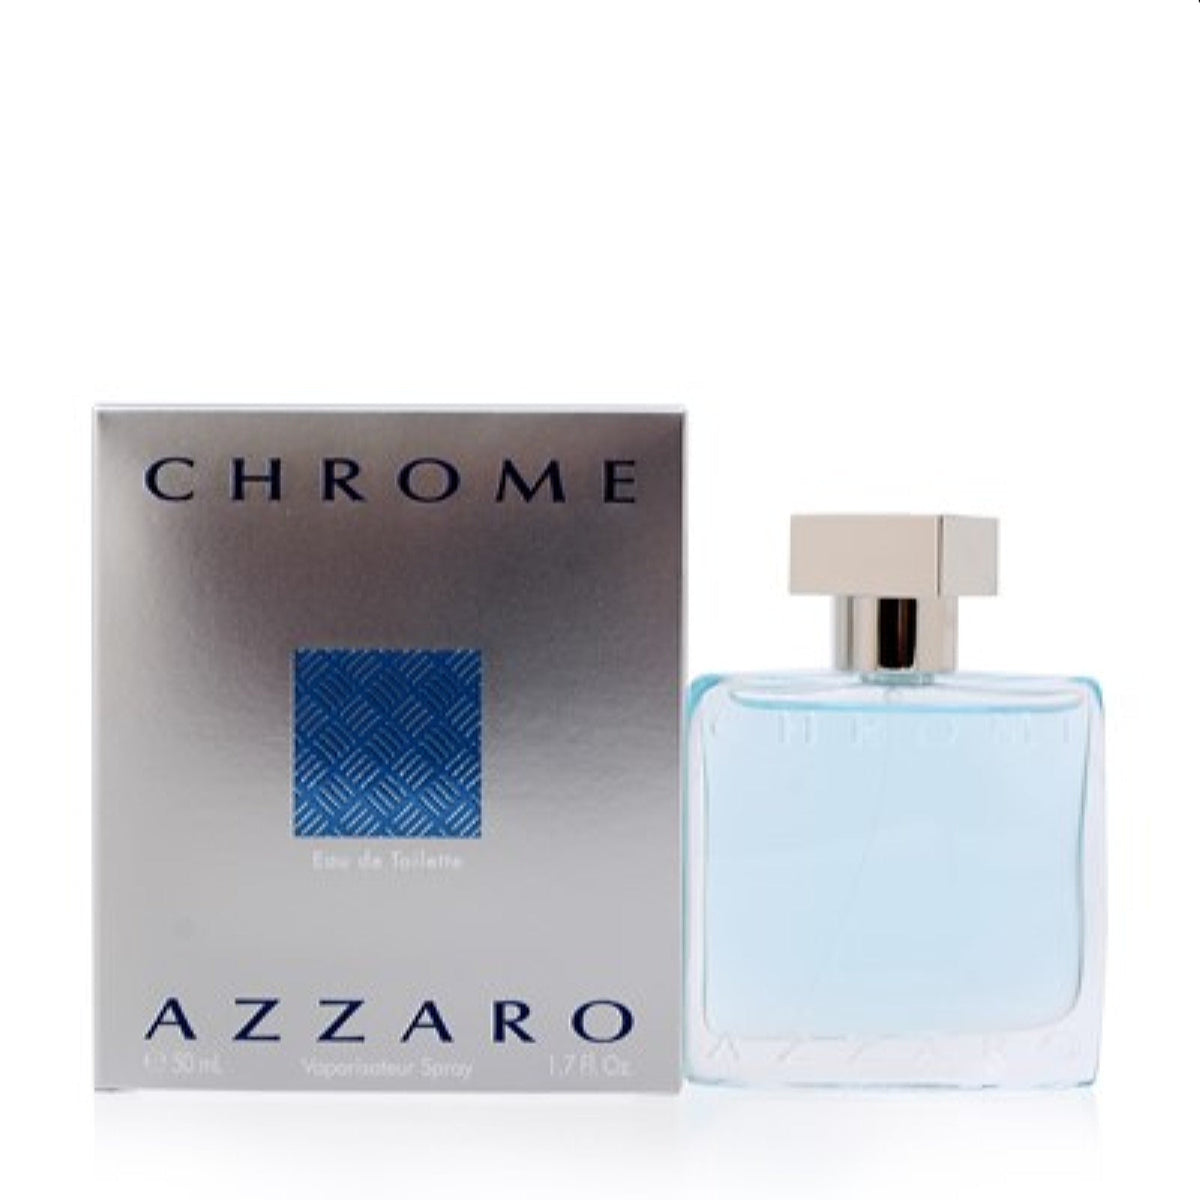 Chrome Azzaro Edt Spray 1.7 Oz (50 Ml) For Men 80076051